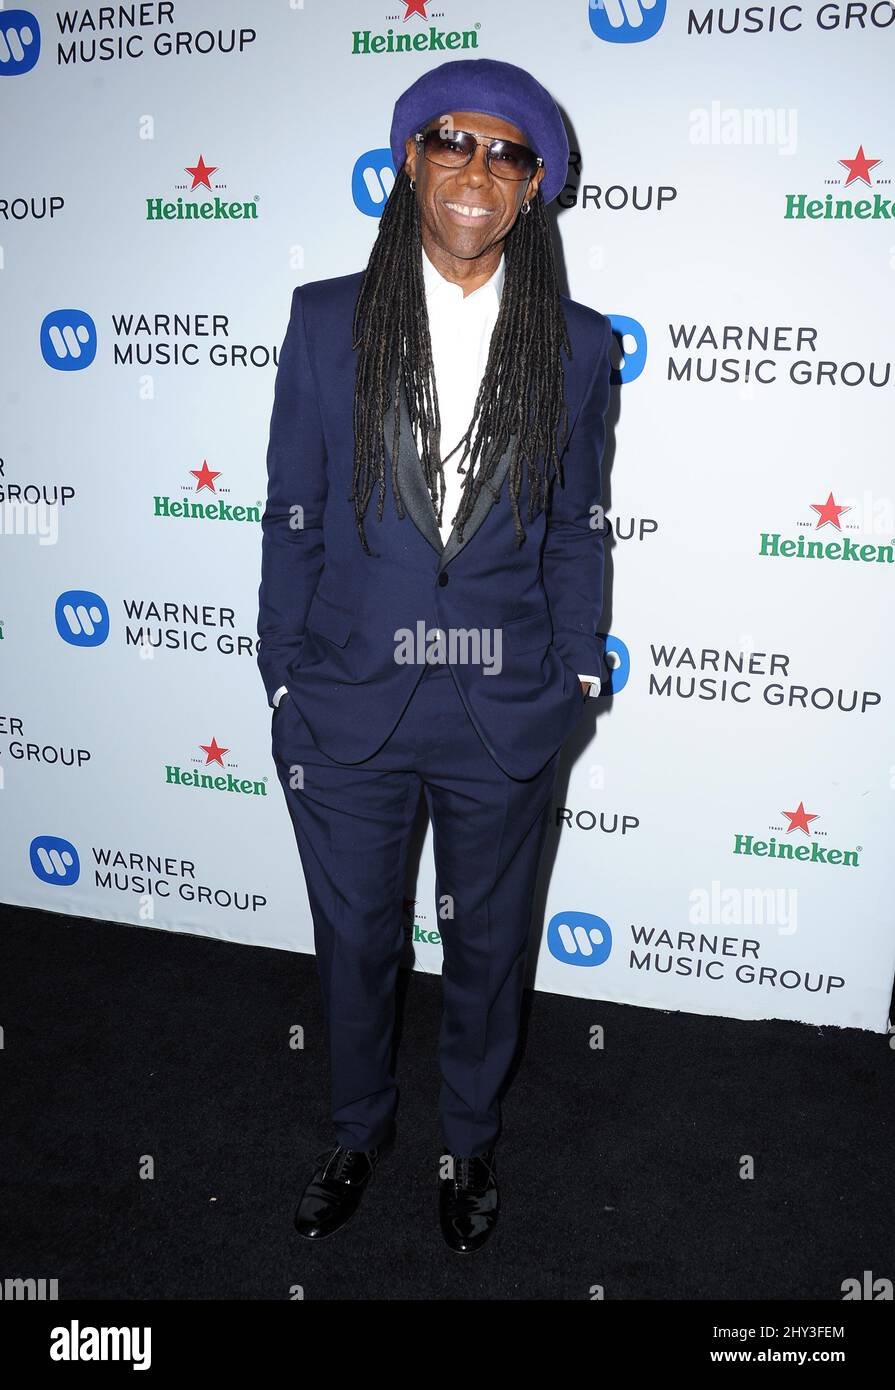 Nile Rodgers participe à la fête Grammy annuelle du groupe Warner Music, qui s'est tenue au Sunset Tower Hotel, à Los Angeles Banque D'Images